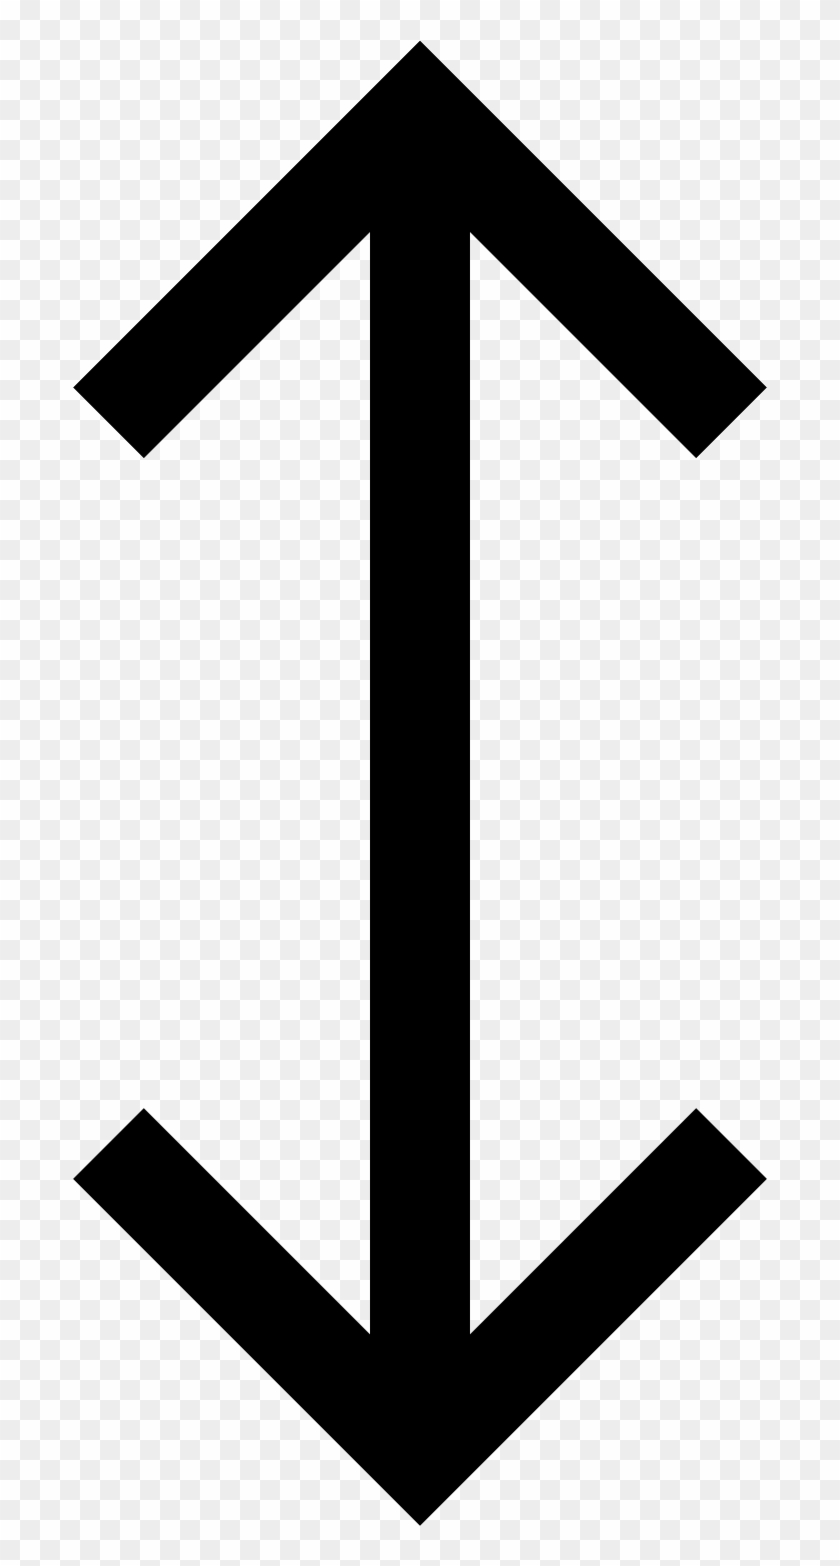 Arrow Computer Icons Symbol Clip Art - Two Head Arrow Png #1725065